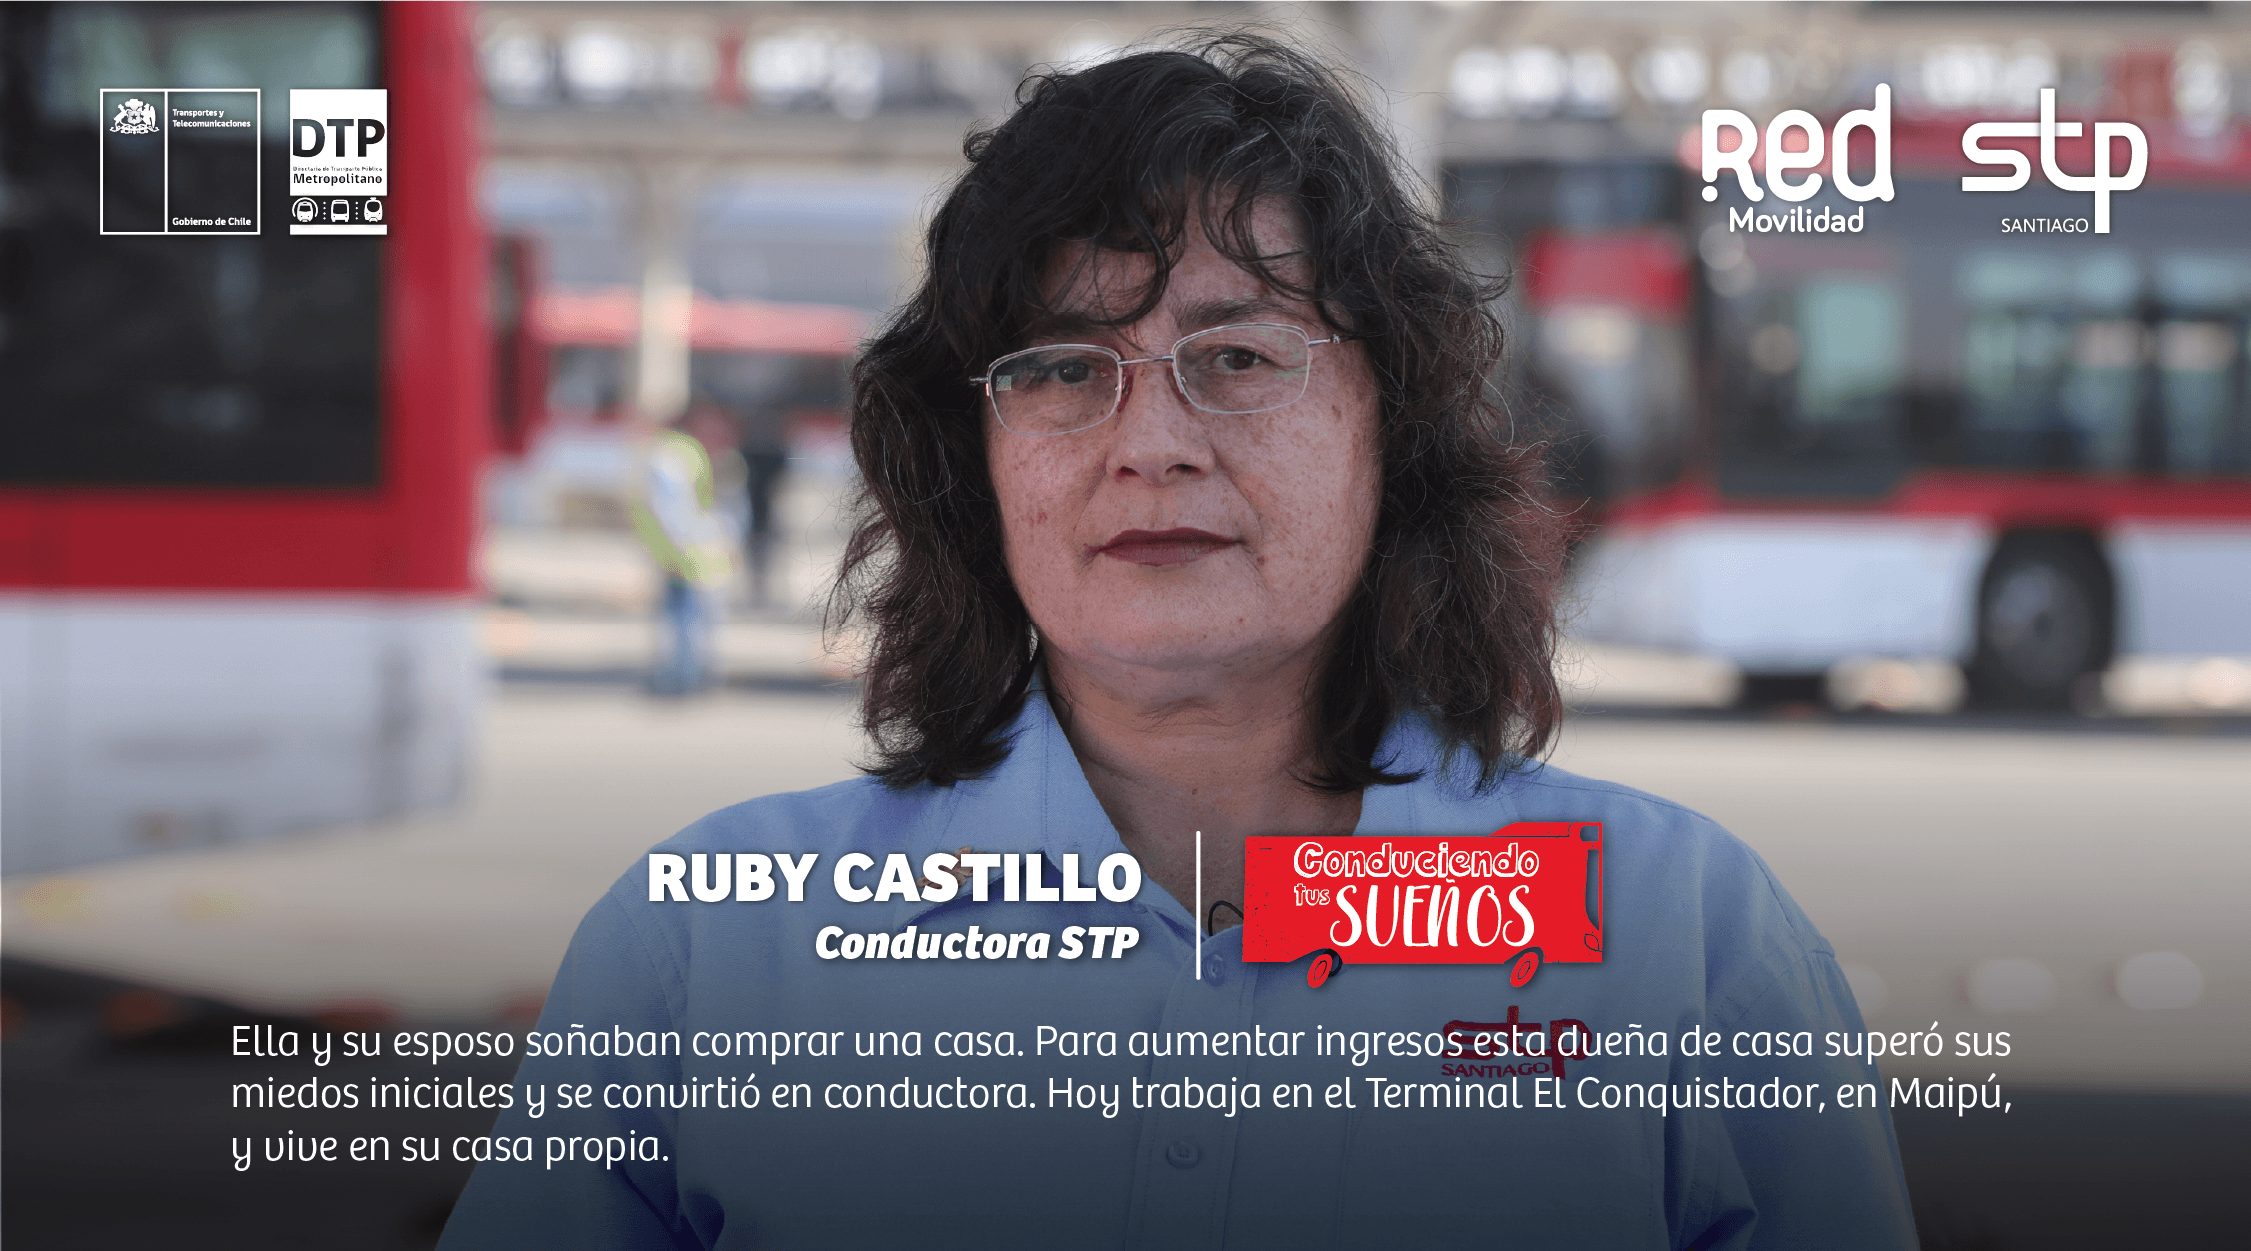 Ruby Castillo